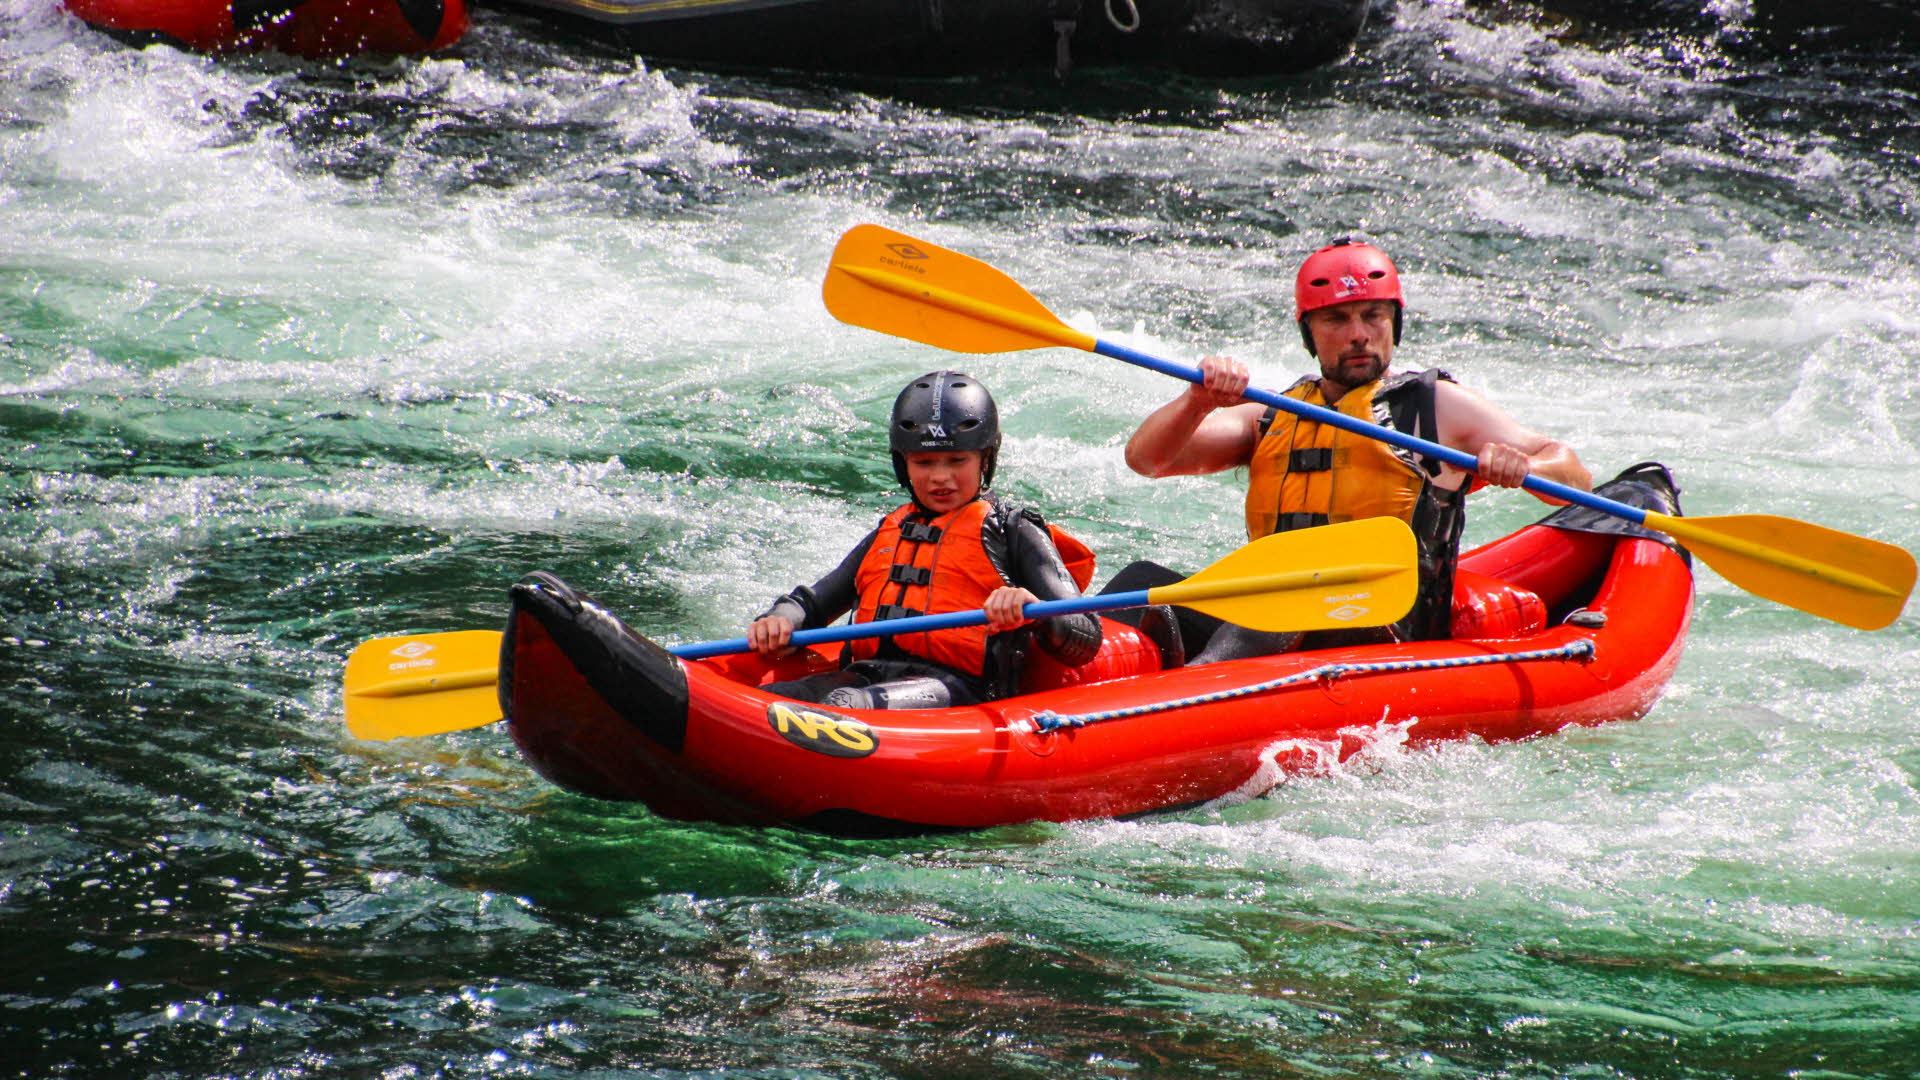 ヴォソ川の急流に浮かぶ小型の赤いラフトに乗った男性と子供